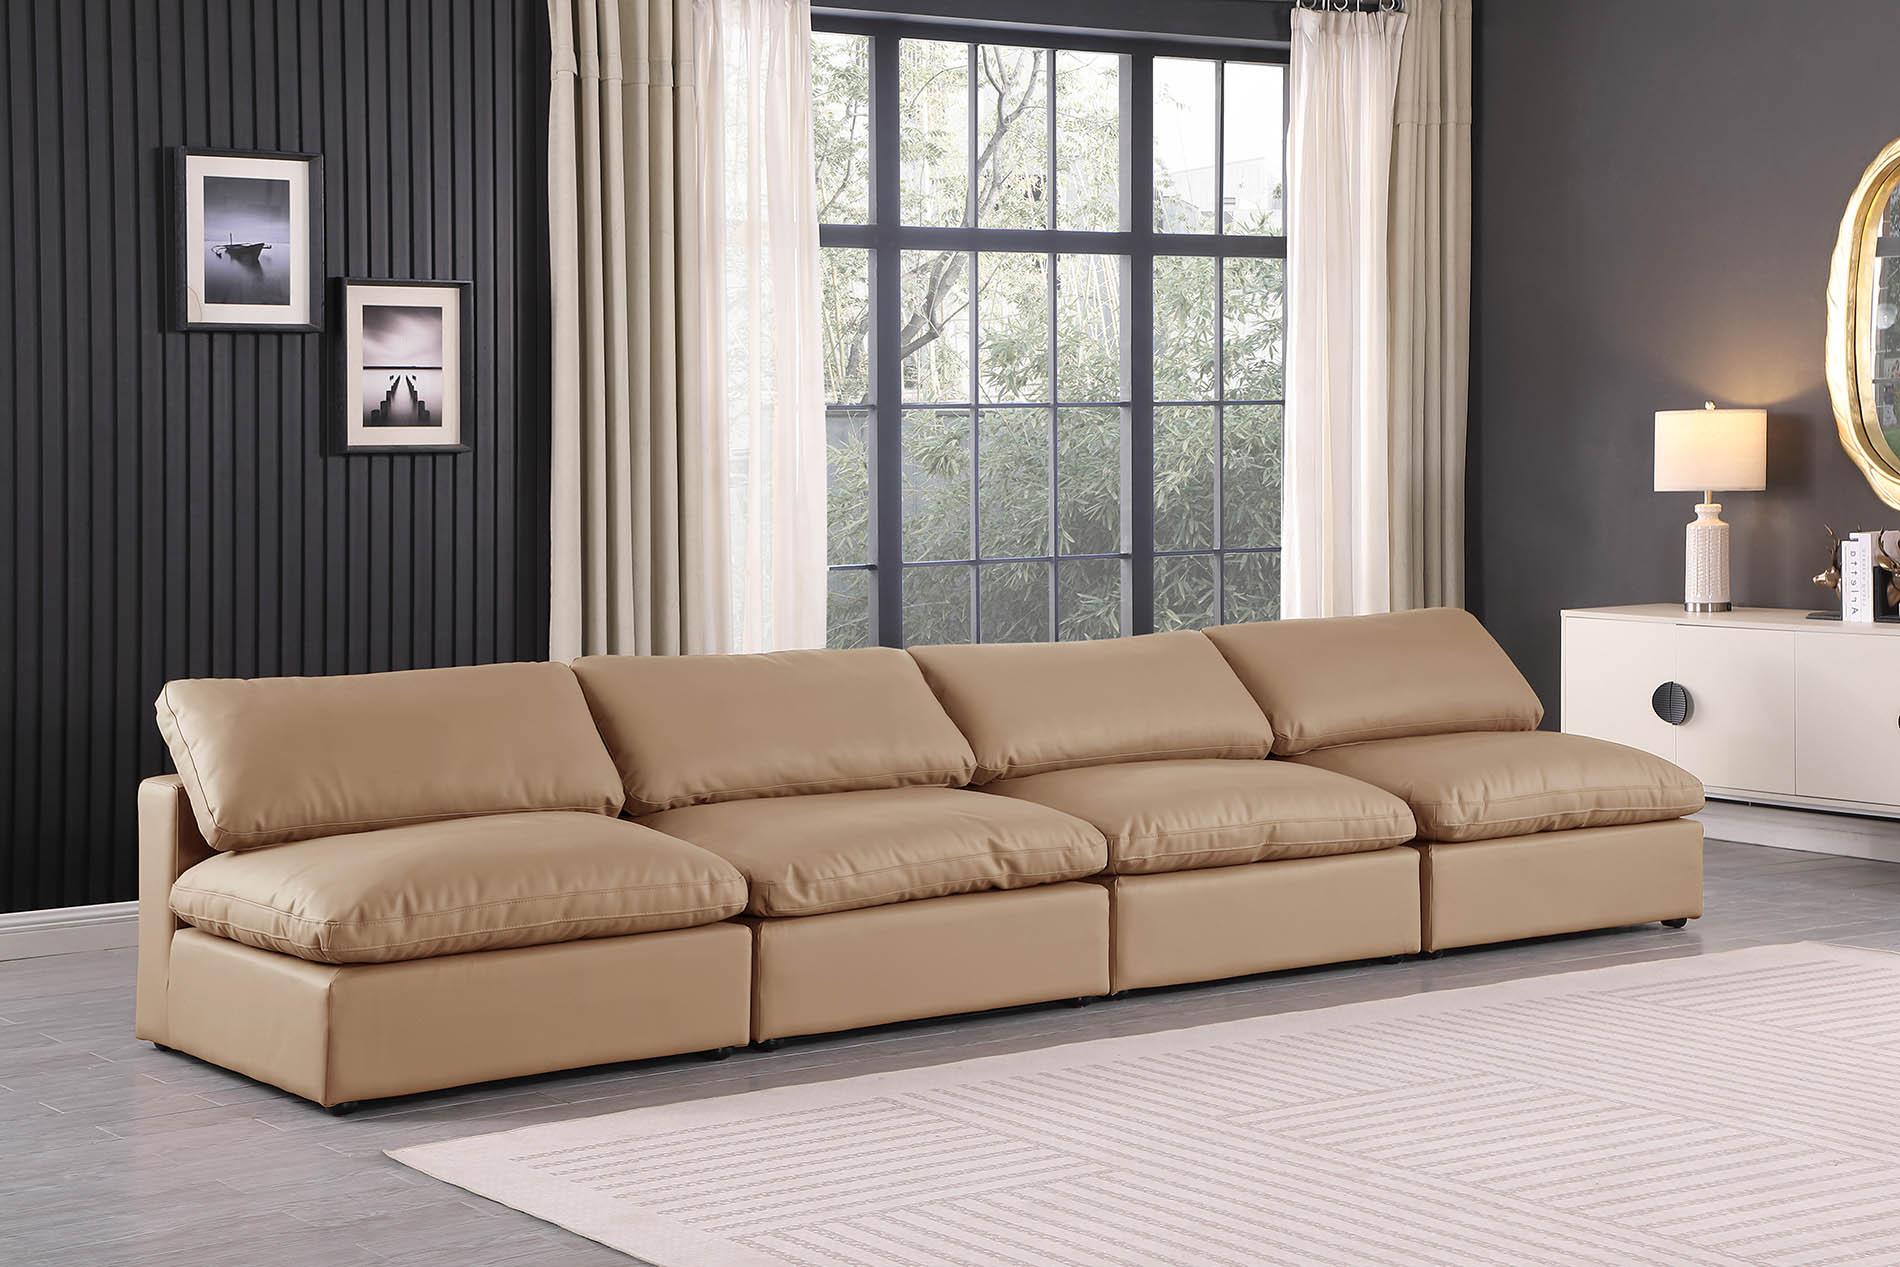 

    
Tan Vegan Leather Modular Sofa COMFY 188Tan-S156 Meridian Contemporary
